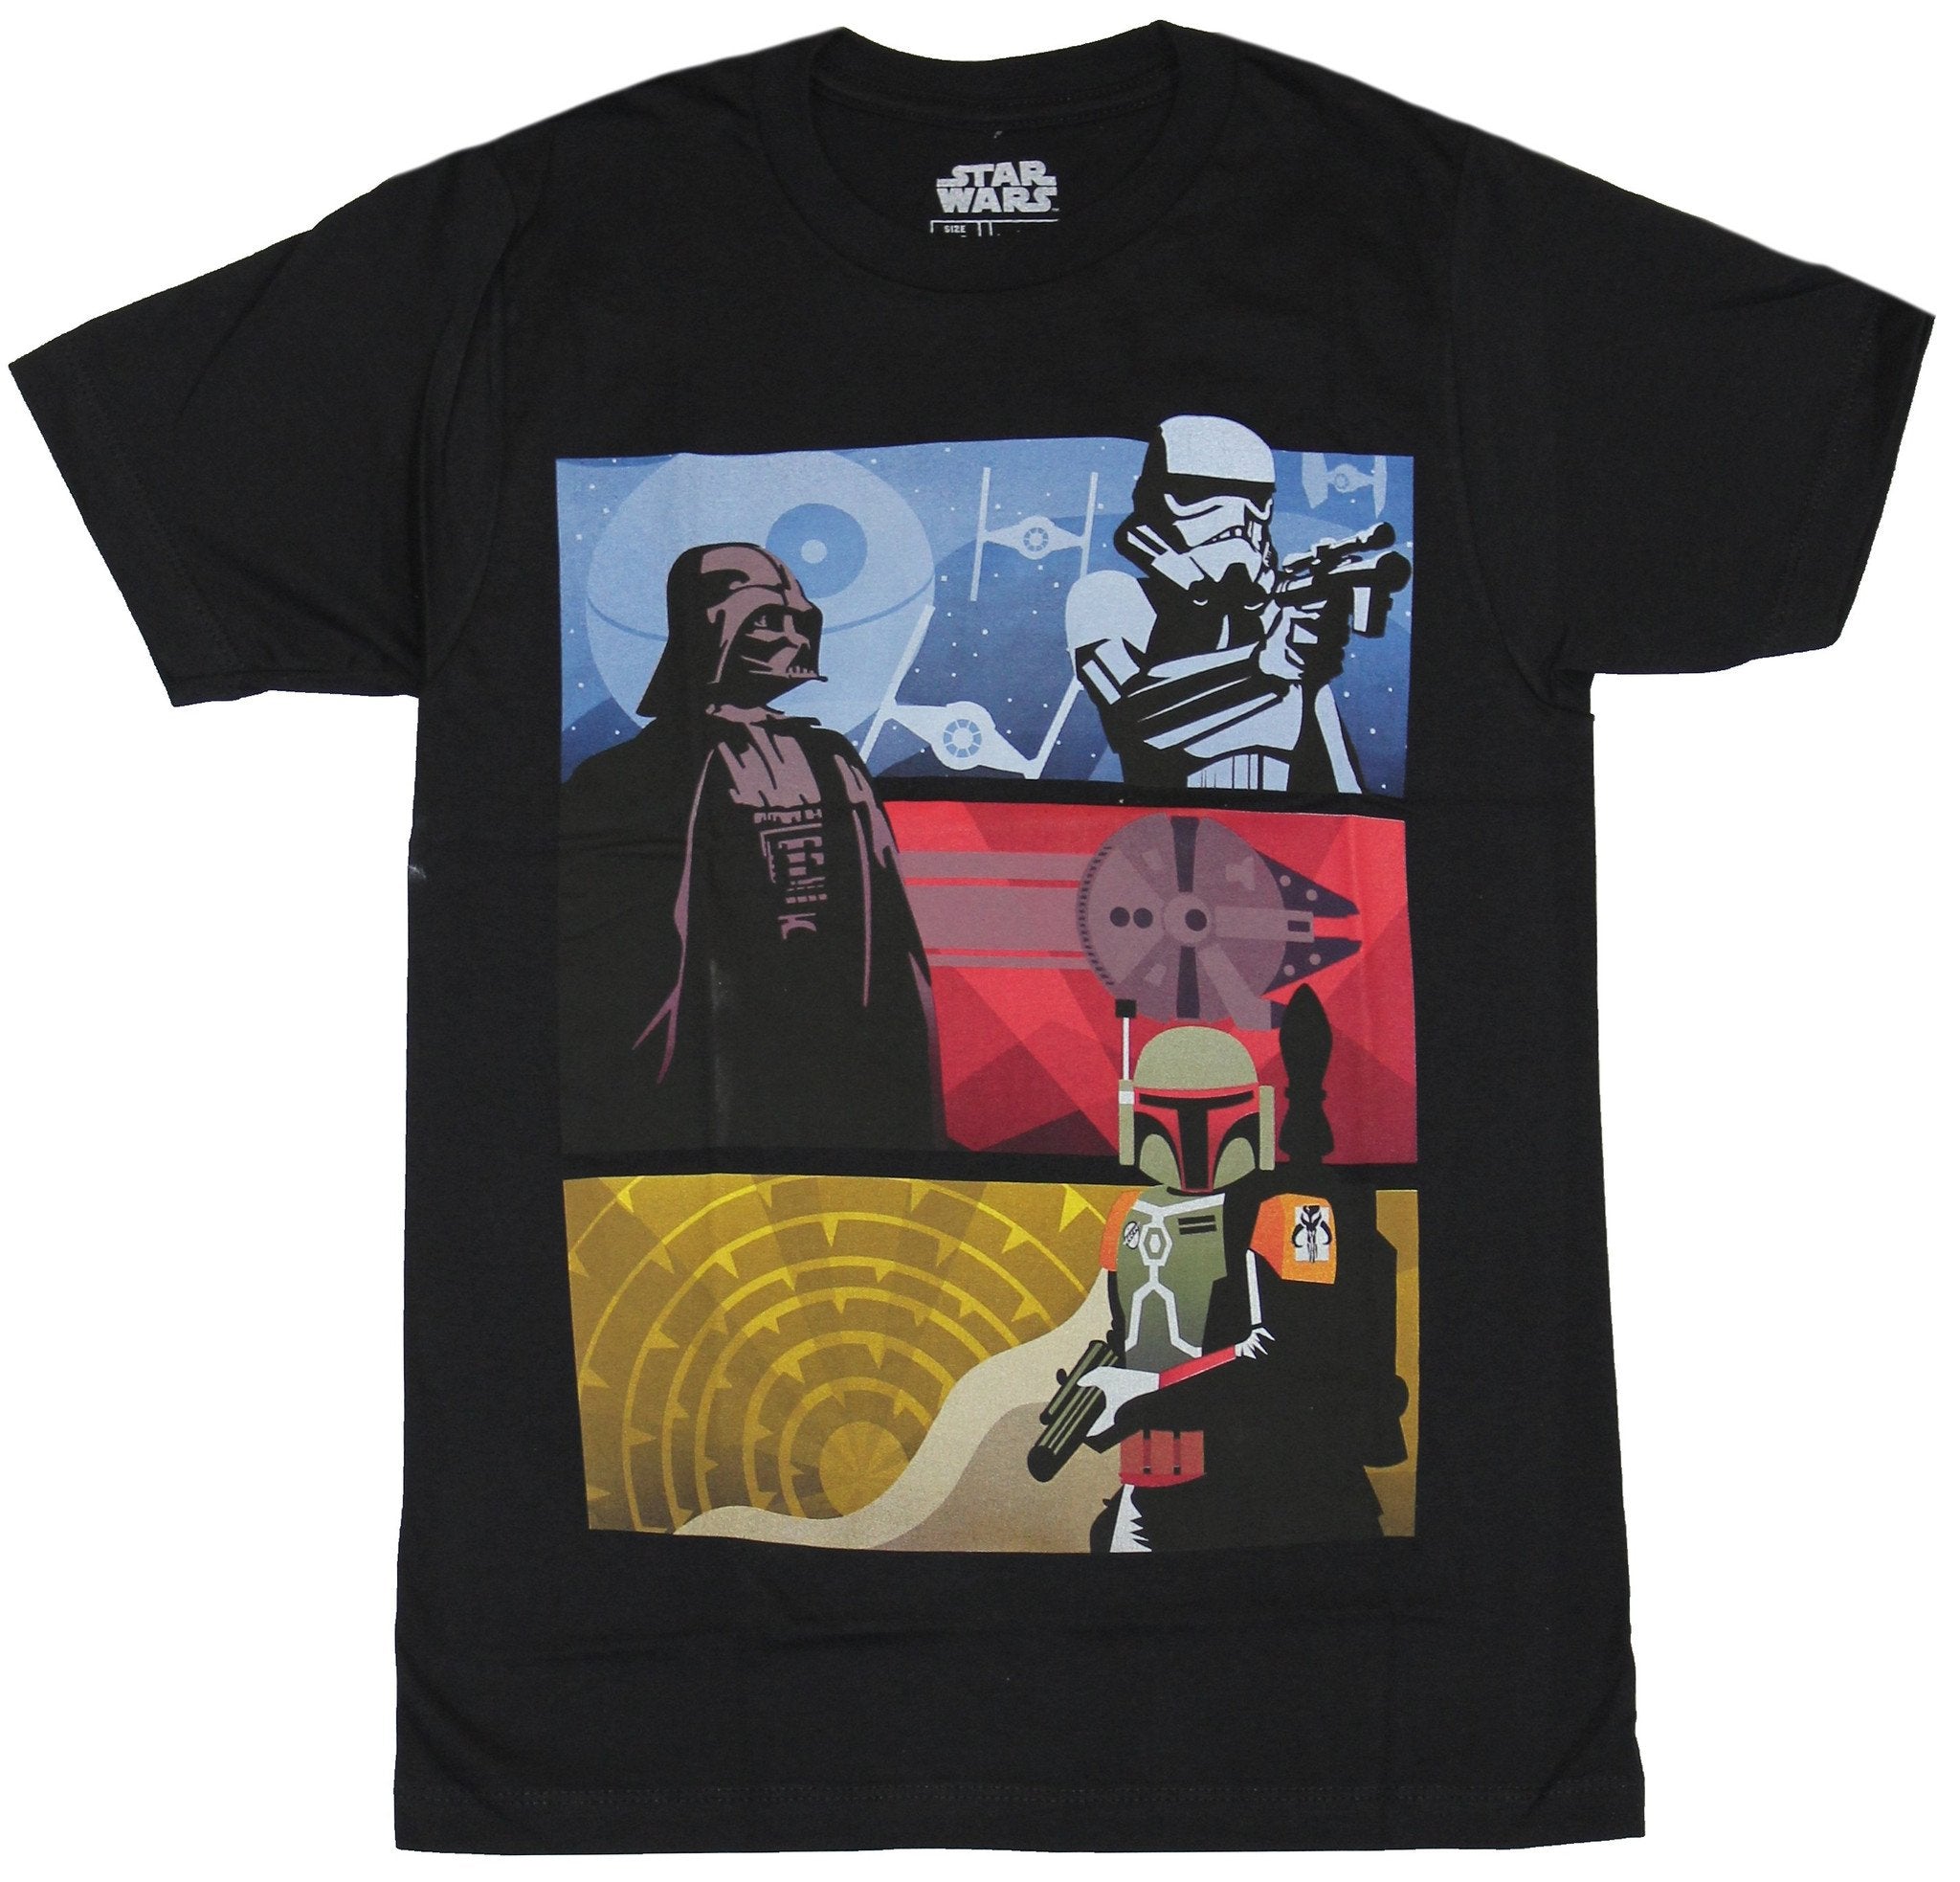 Star Wars Mens T-Shirt - Stormtrooper Darth Vader Boba Fett Color Bars Image